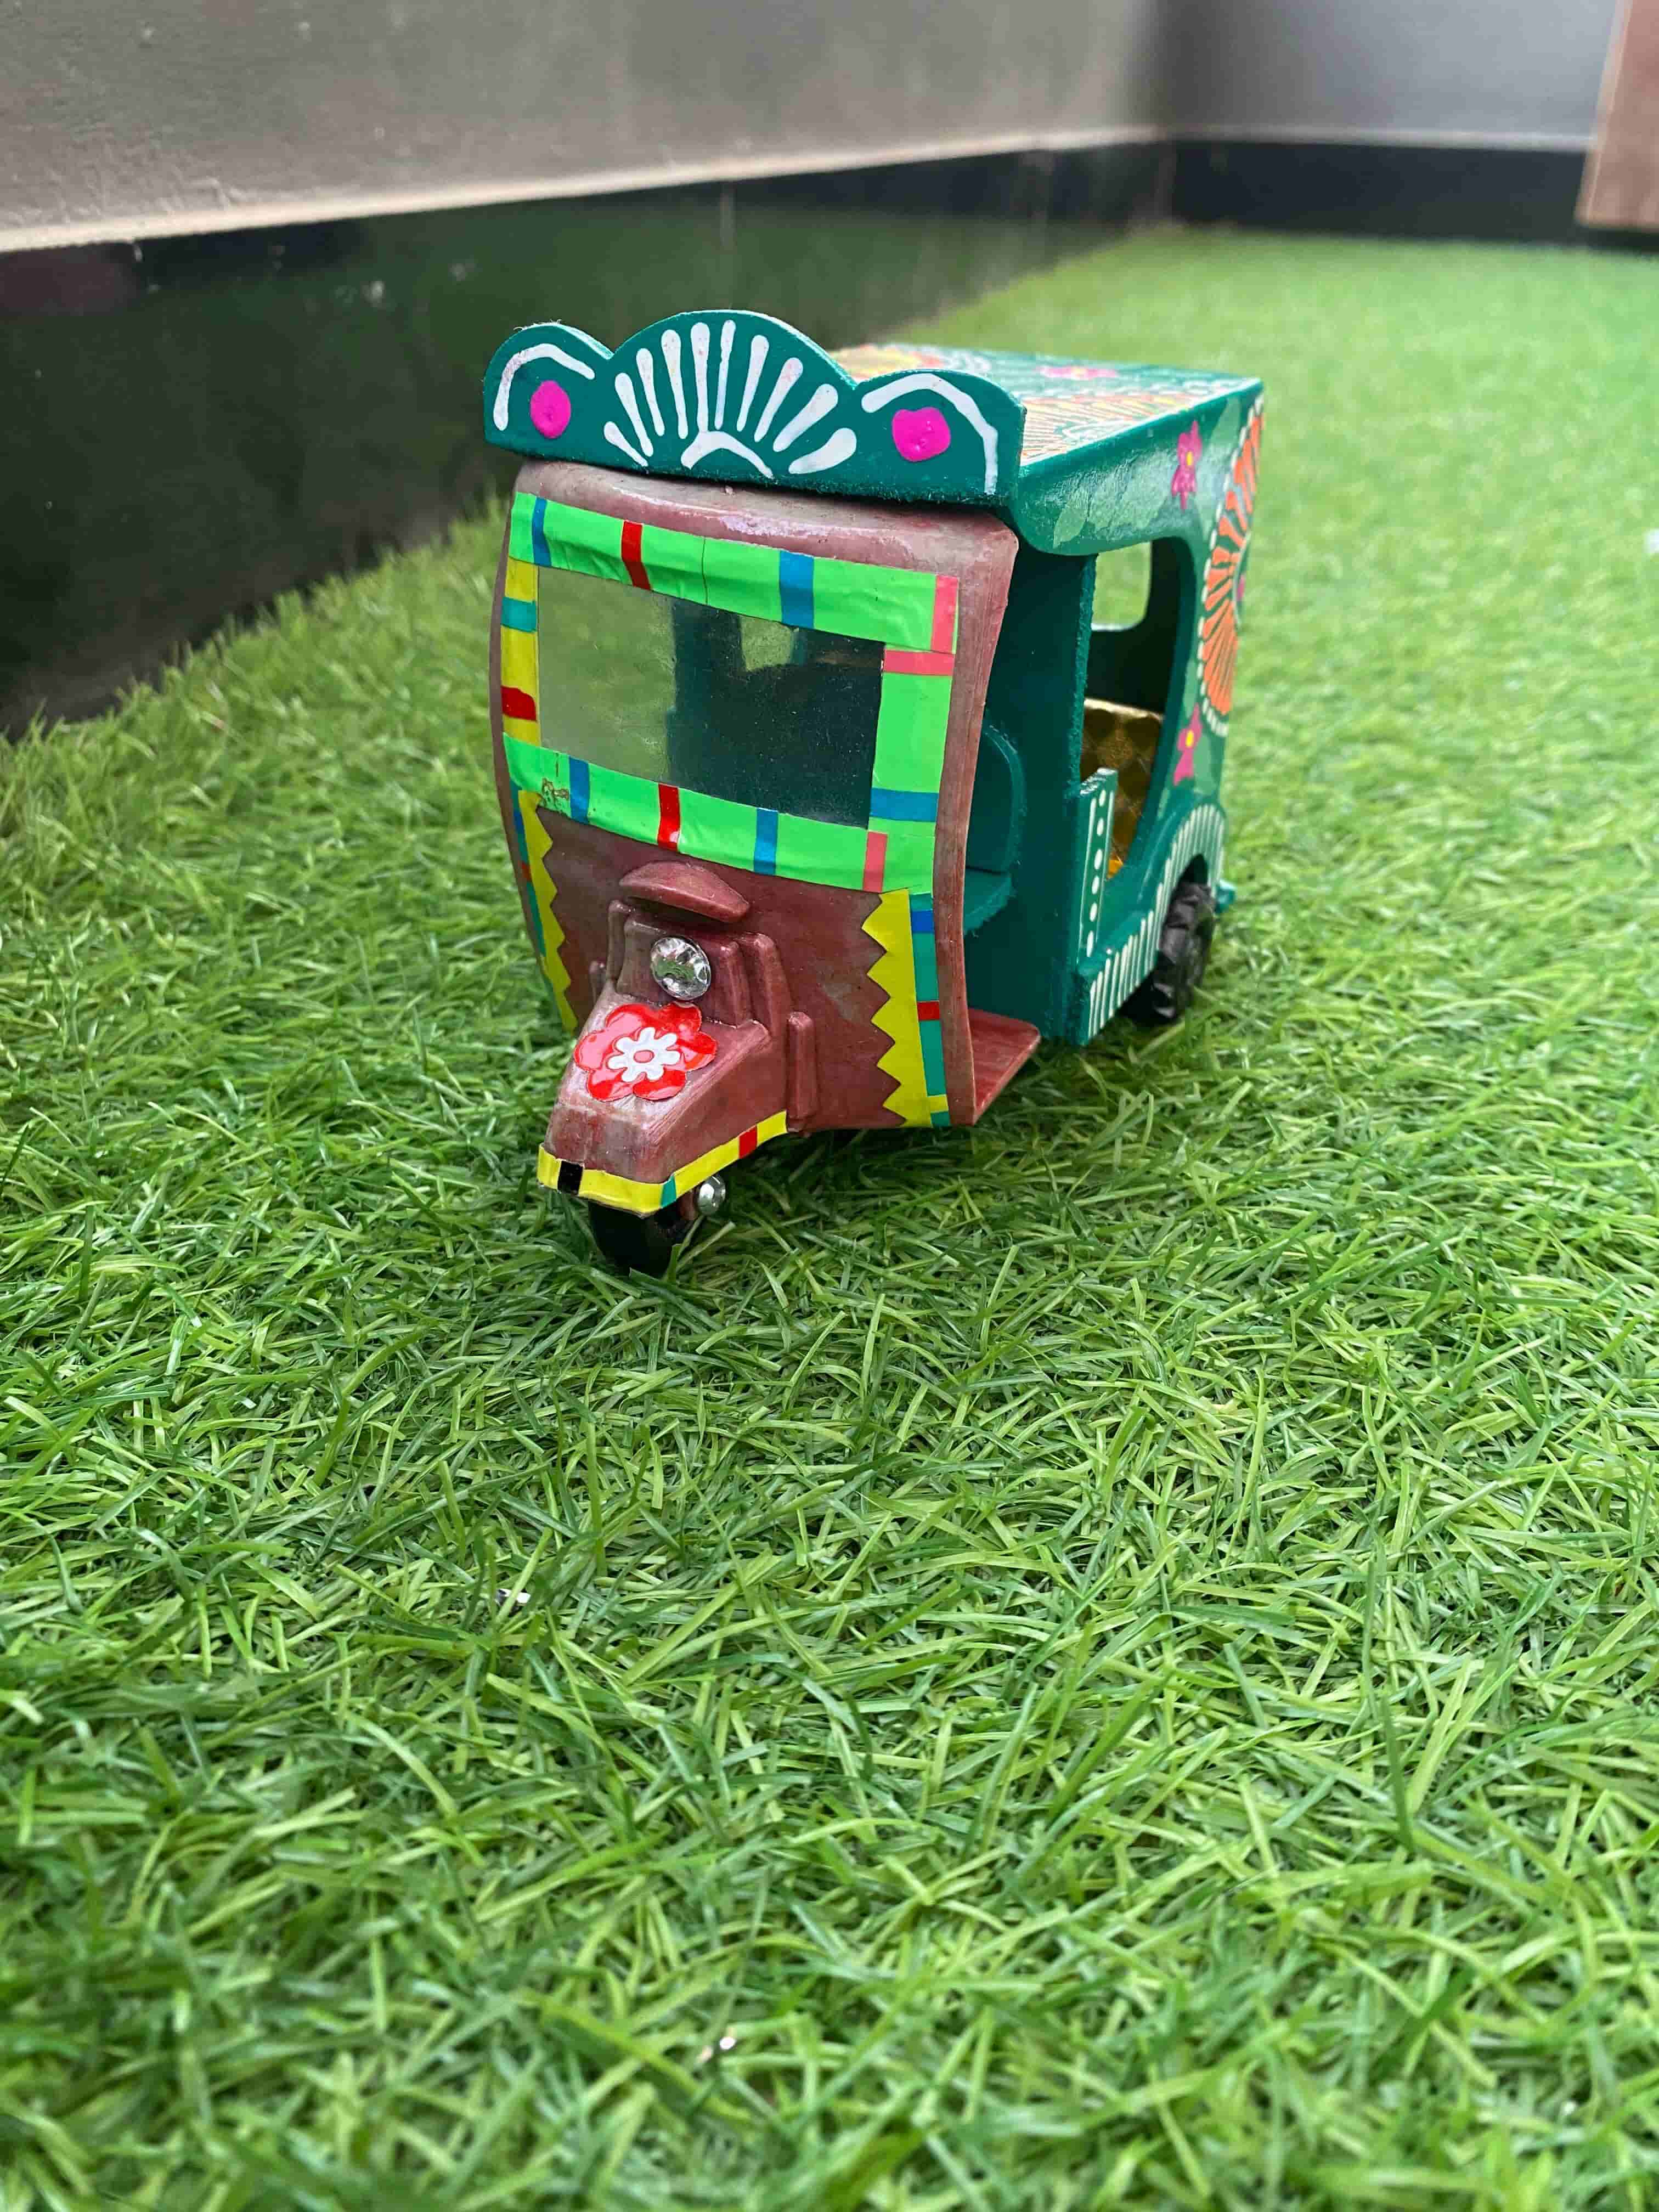 masterpiece-handcrafted-truck-art-rickshaw-green-color-naksh-decor-home-decor-truck-art-4